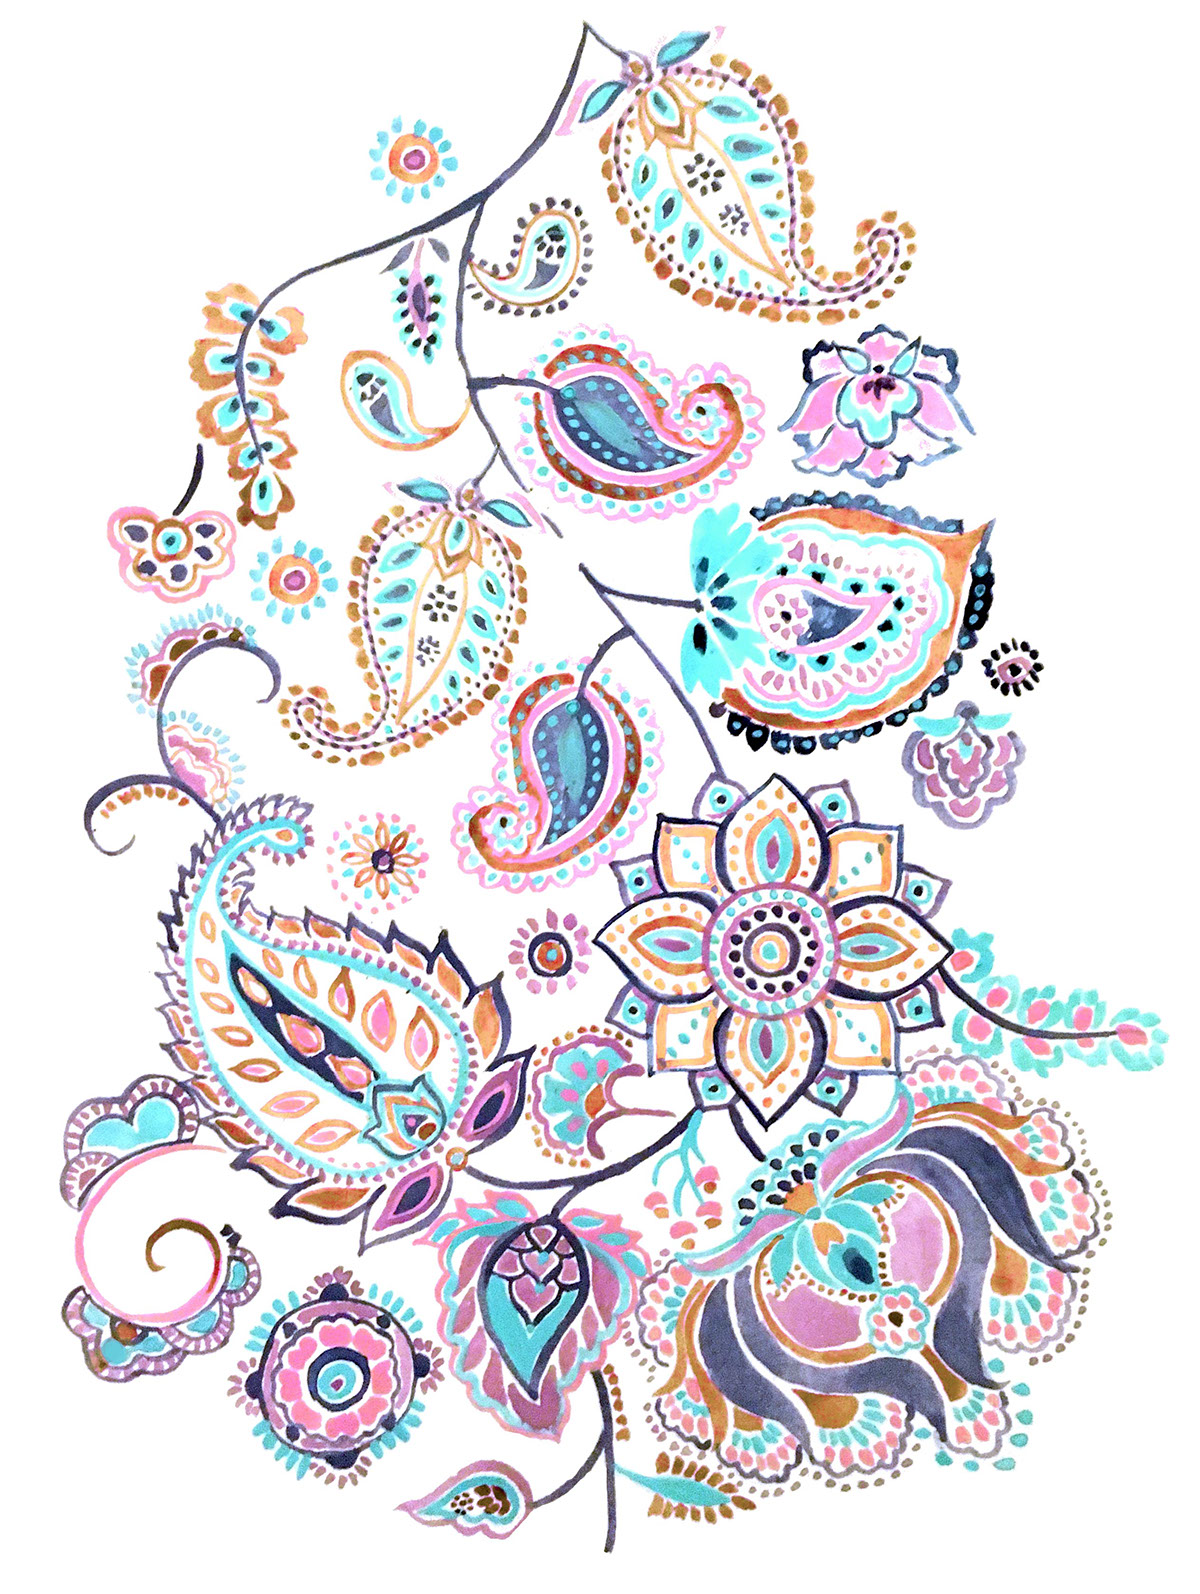 Textiles paint watercolor gouache sketchbook floral paisley fabric pattern print print studio folk